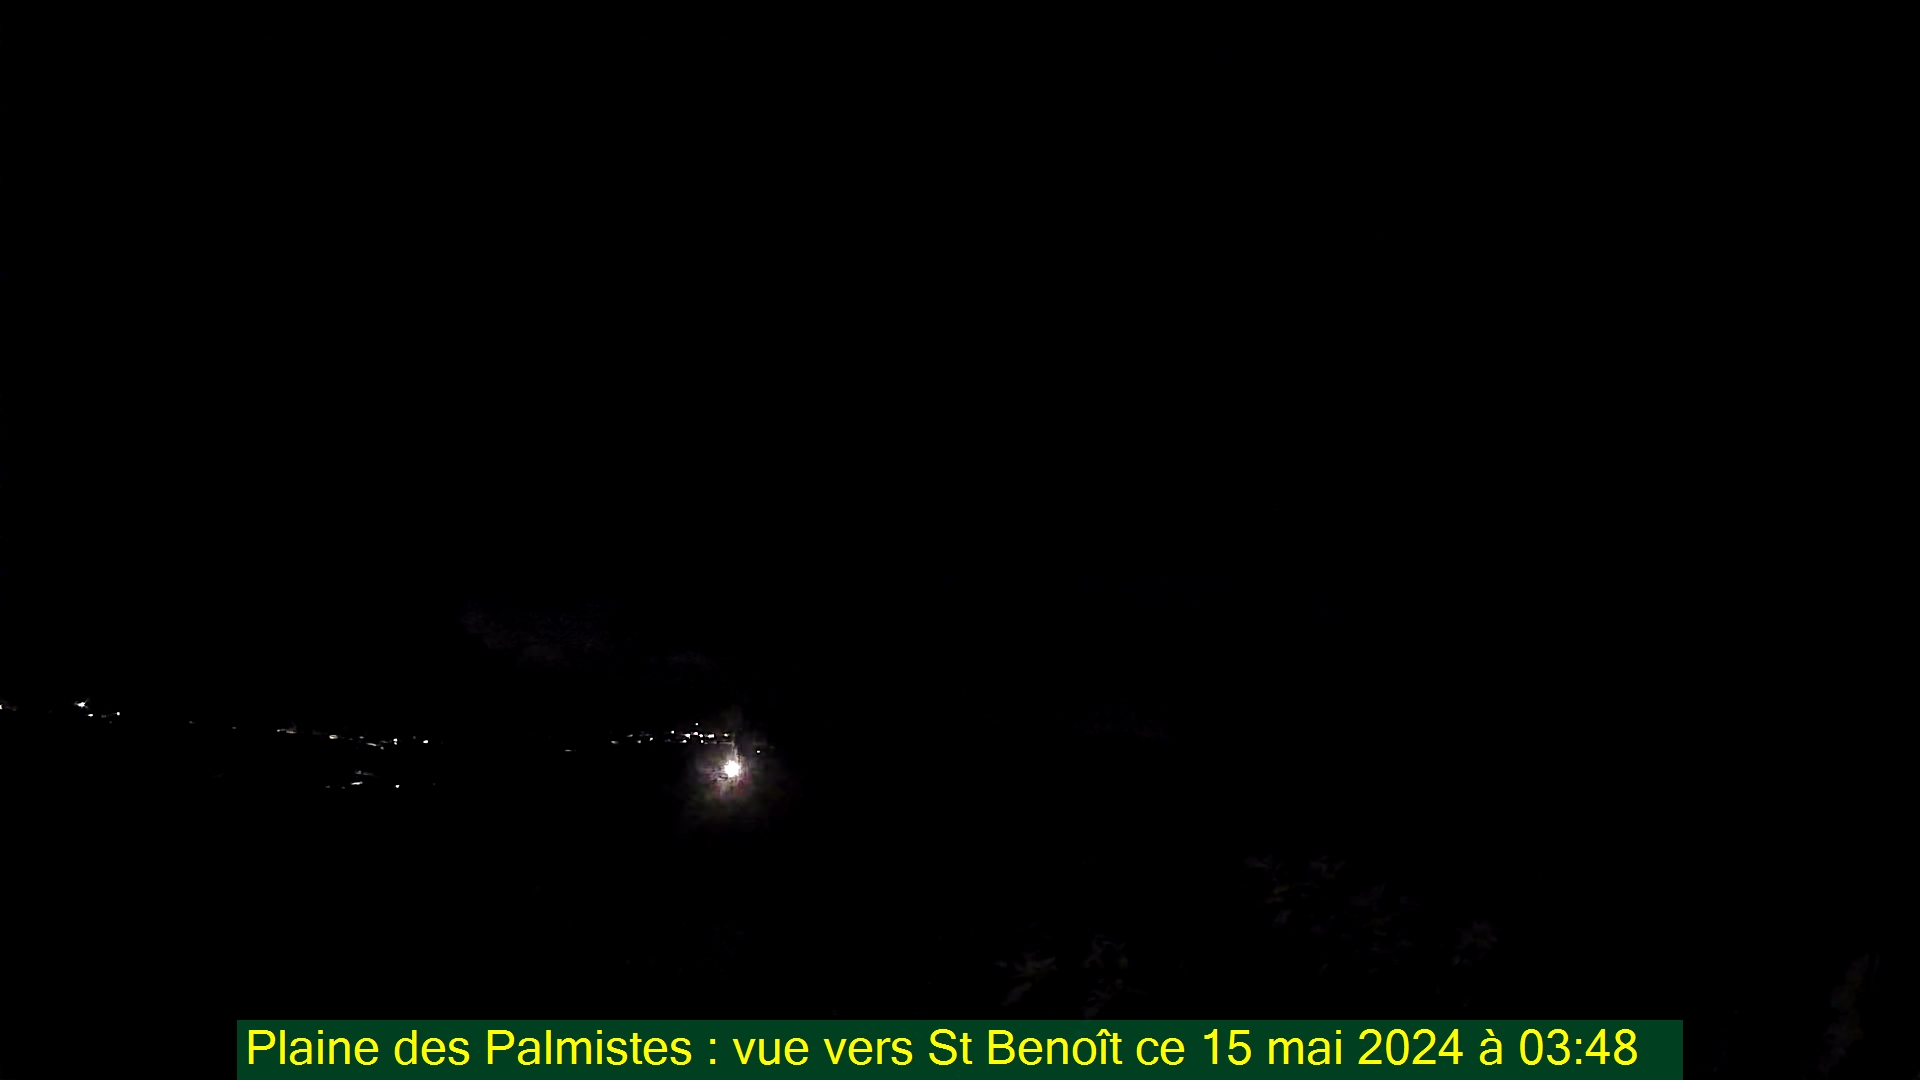 Saint-Denis (Réunion) Mon. 03:50